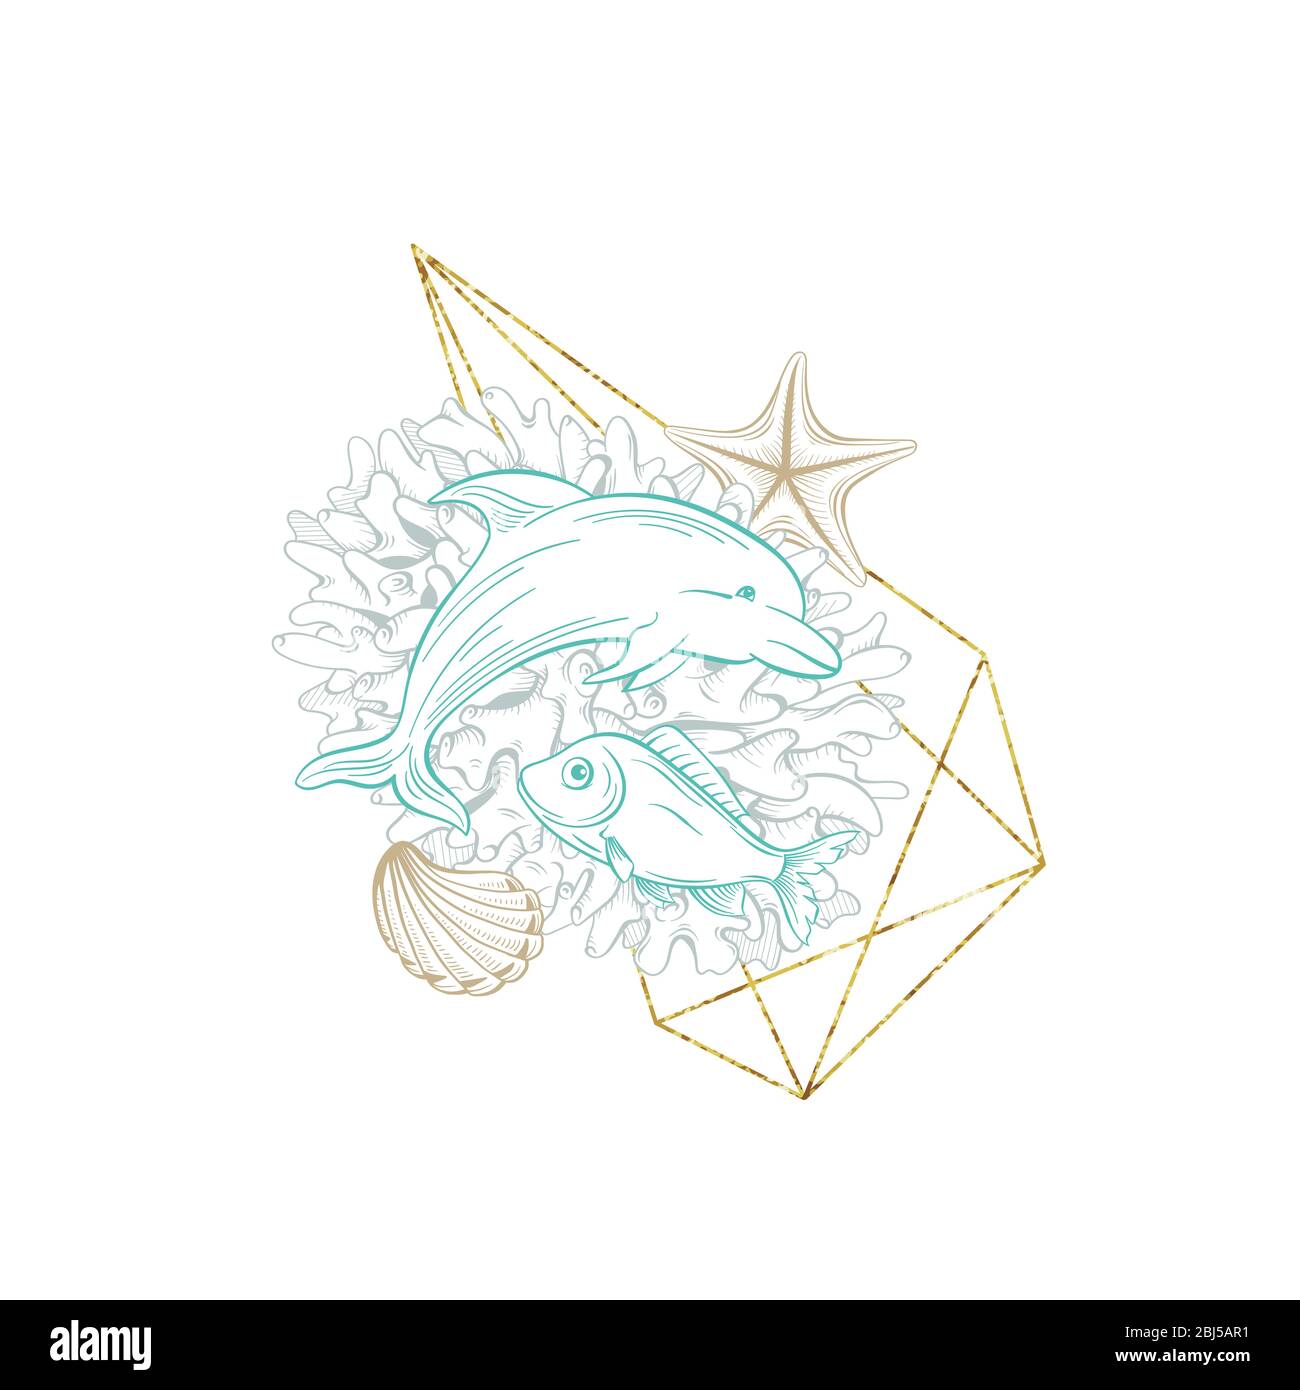 Corona d'arte marina, linea di disegno vettoriale, delfini oceanici e coralli marini in oro glitter frame. Design marino per carta di nozze, viaggi e vacanze, subacquea tropicale pesce mare decorazione sfondo Illustrazione Vettoriale